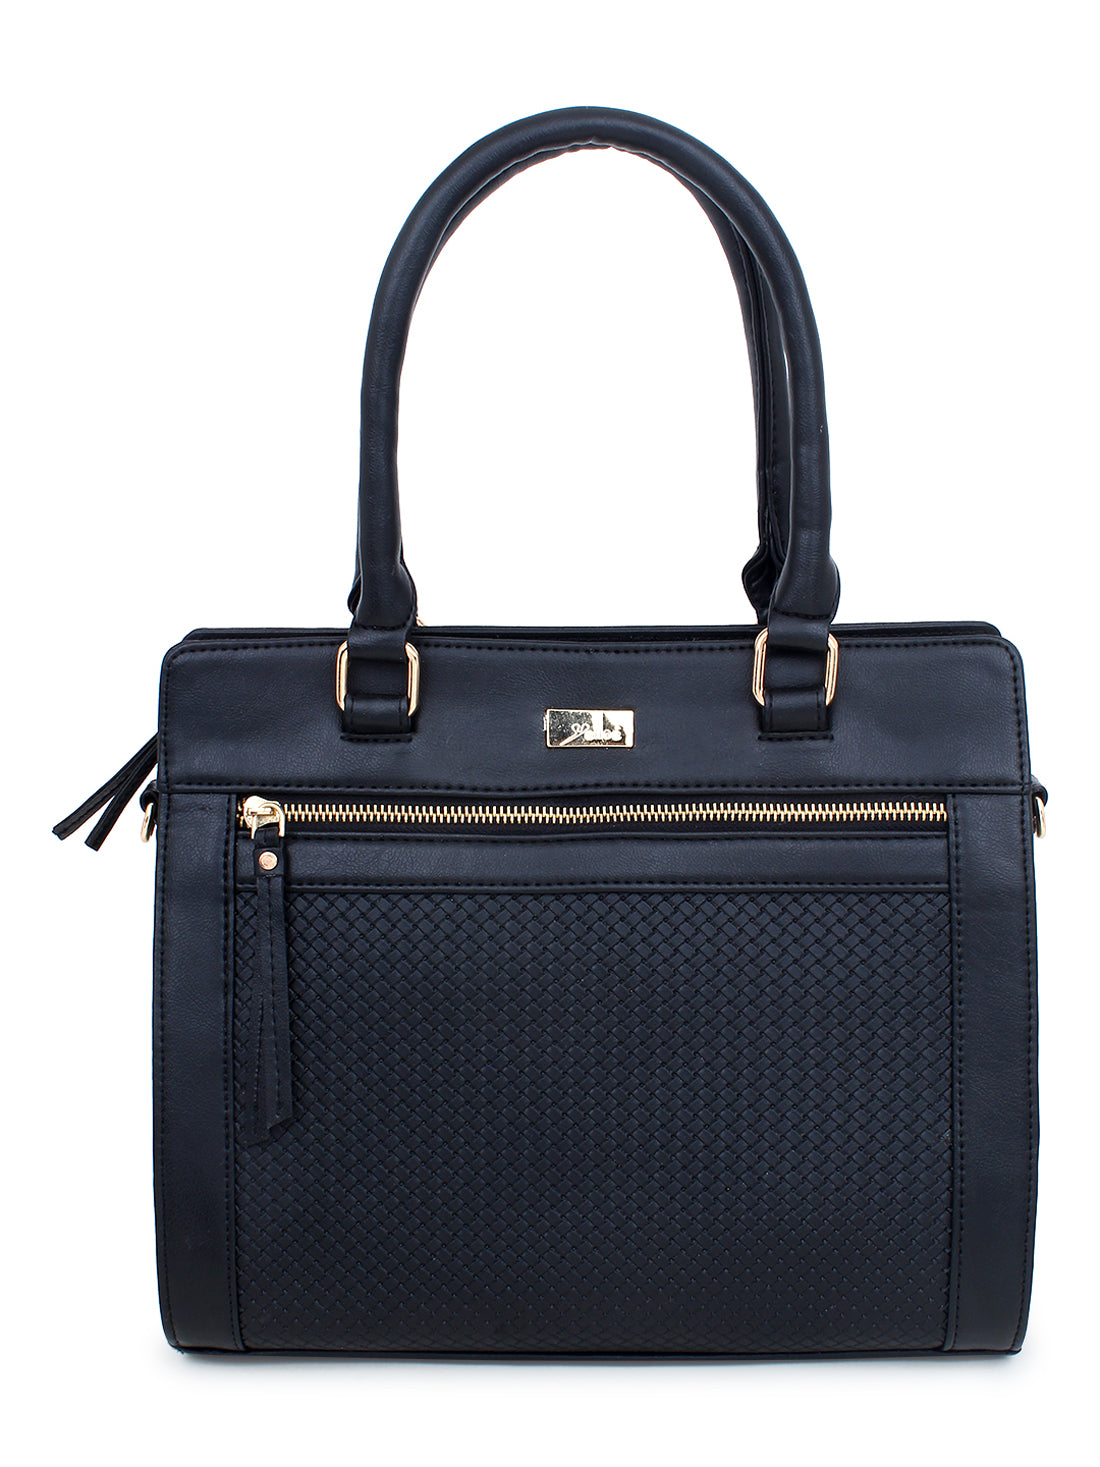 Black Color Interweave Handbag